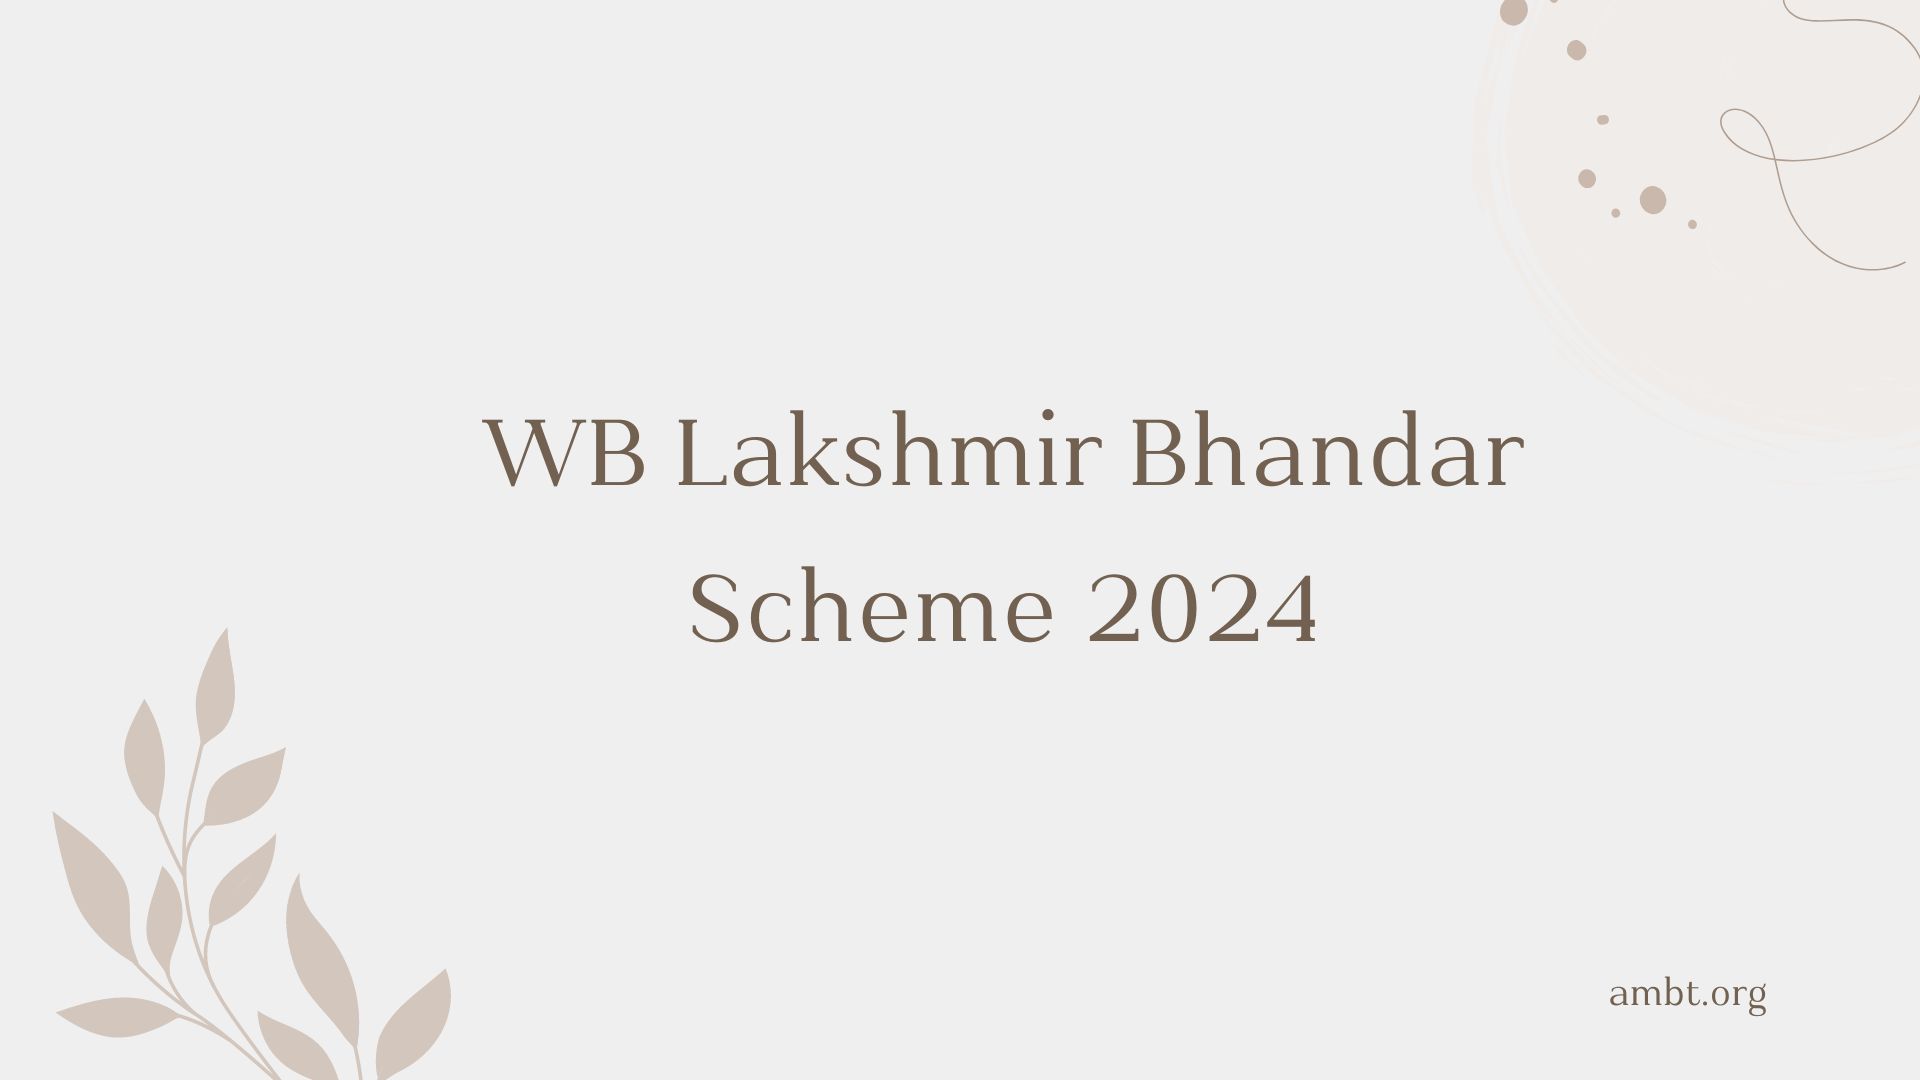 WB Lakshmir Bhandar Scheme 2024